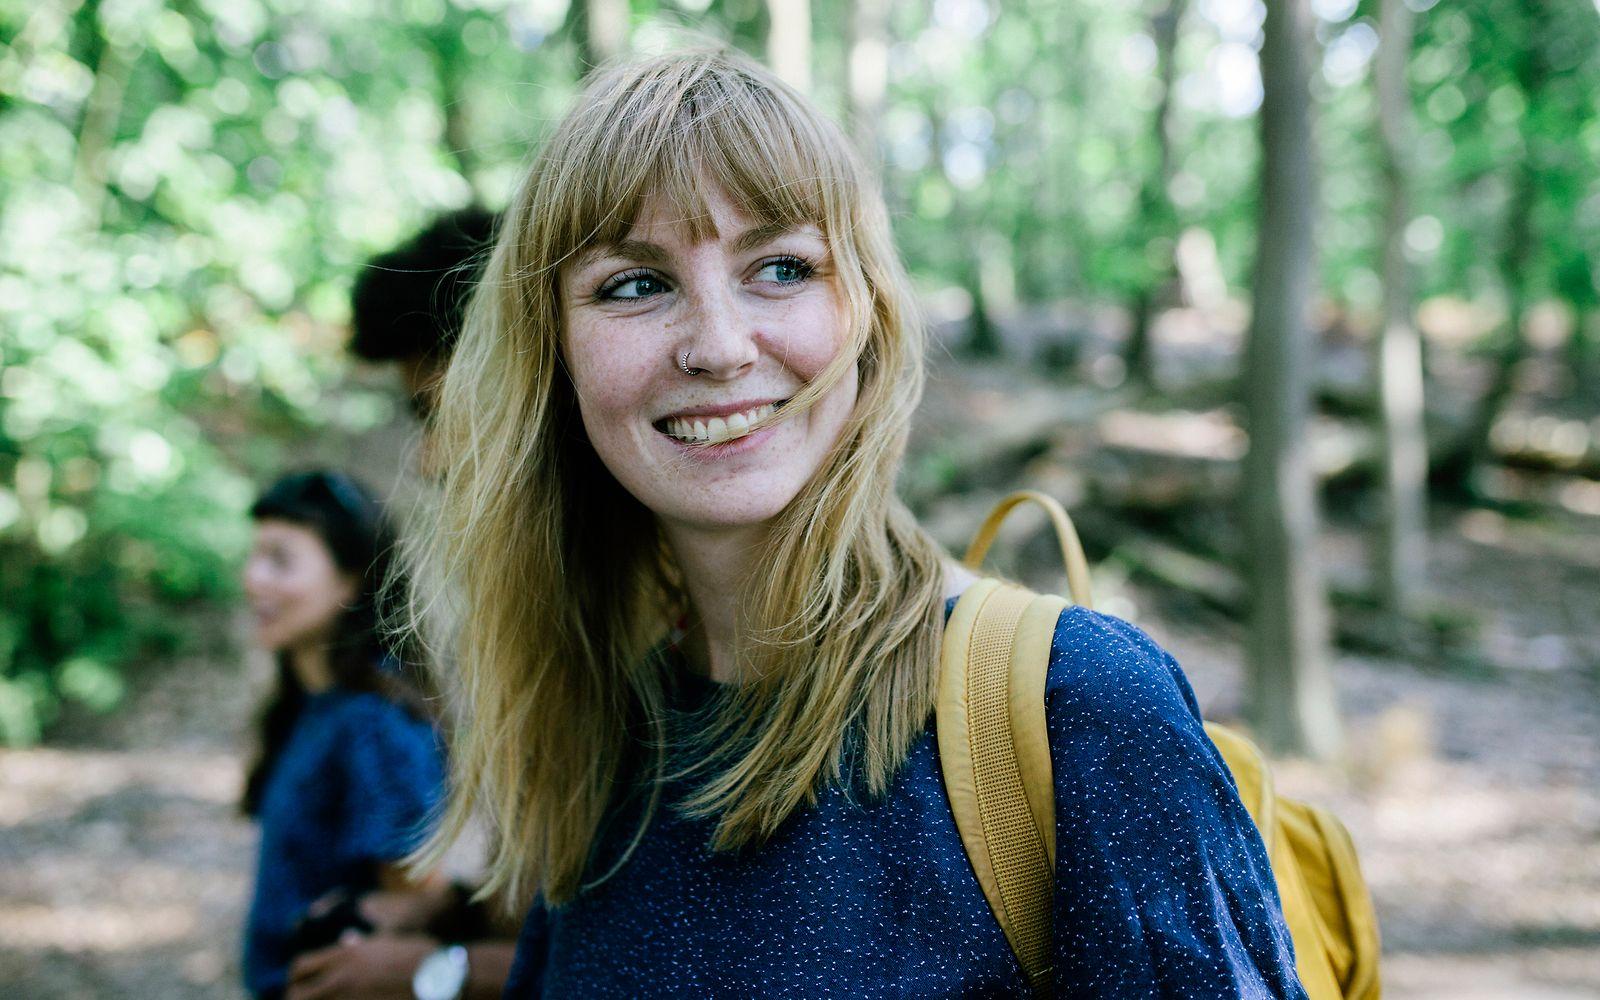 Bild: Junge Frau mit Rucksack freut sich über einen Ausflug in den Wald.